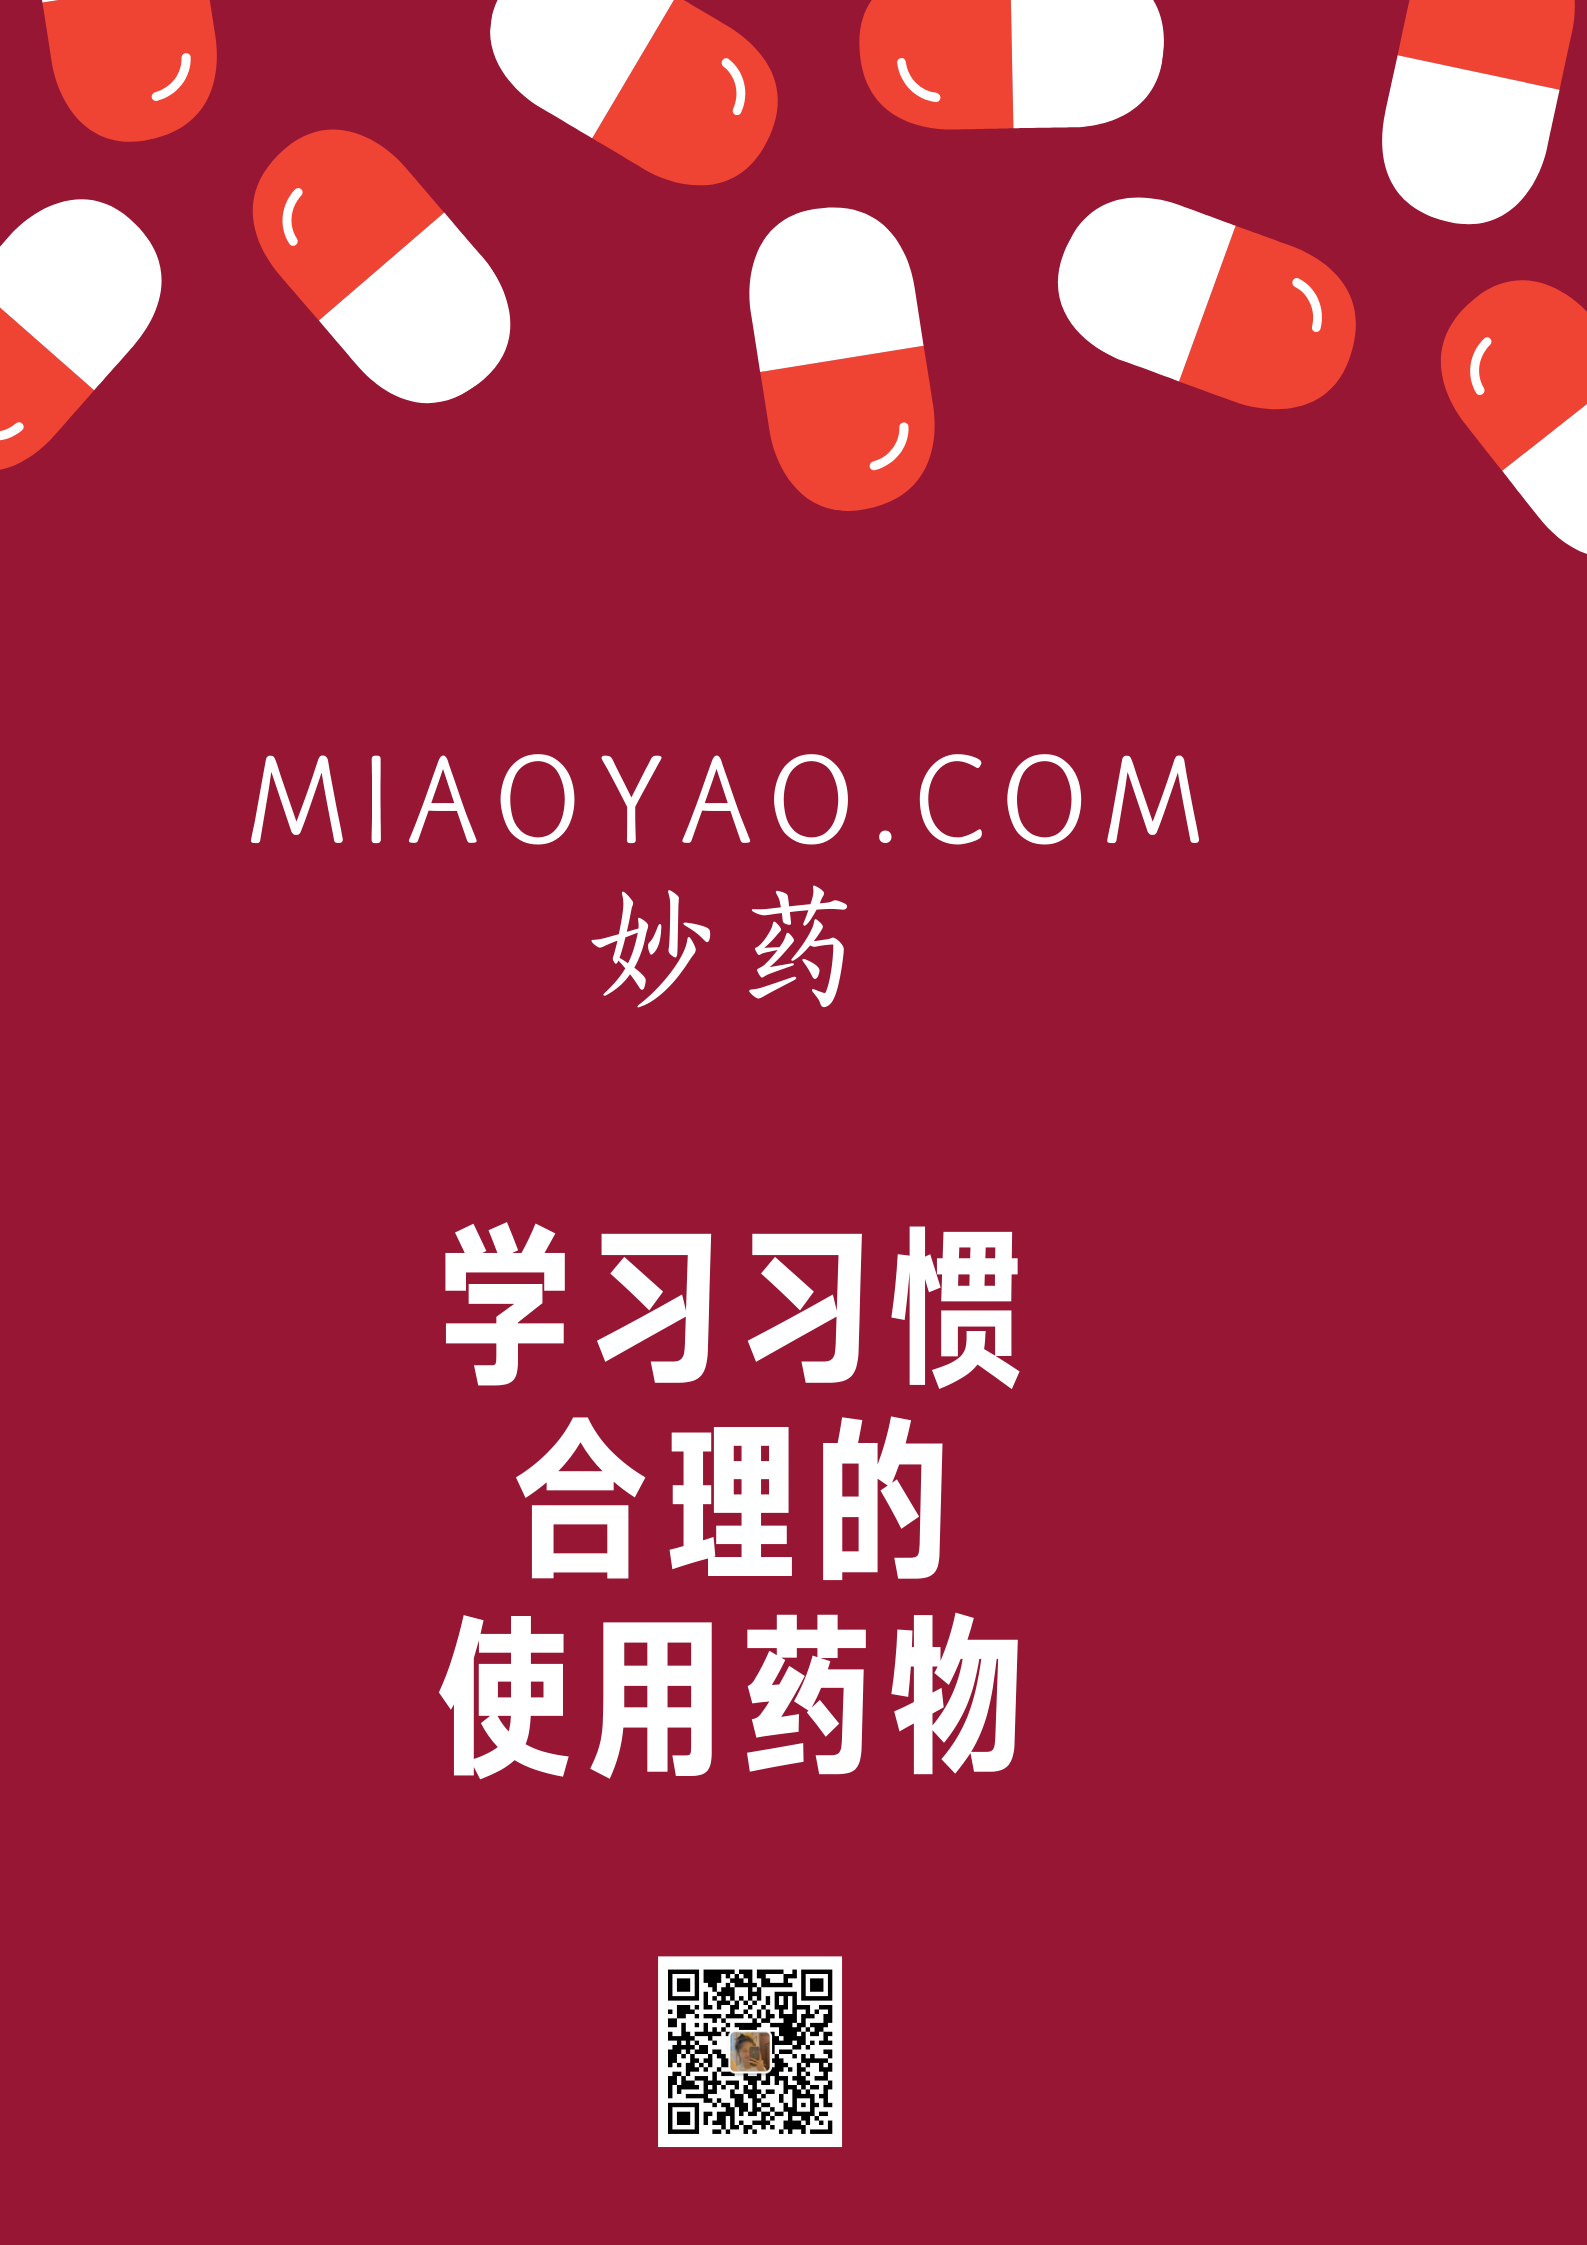 miaoyao.com  